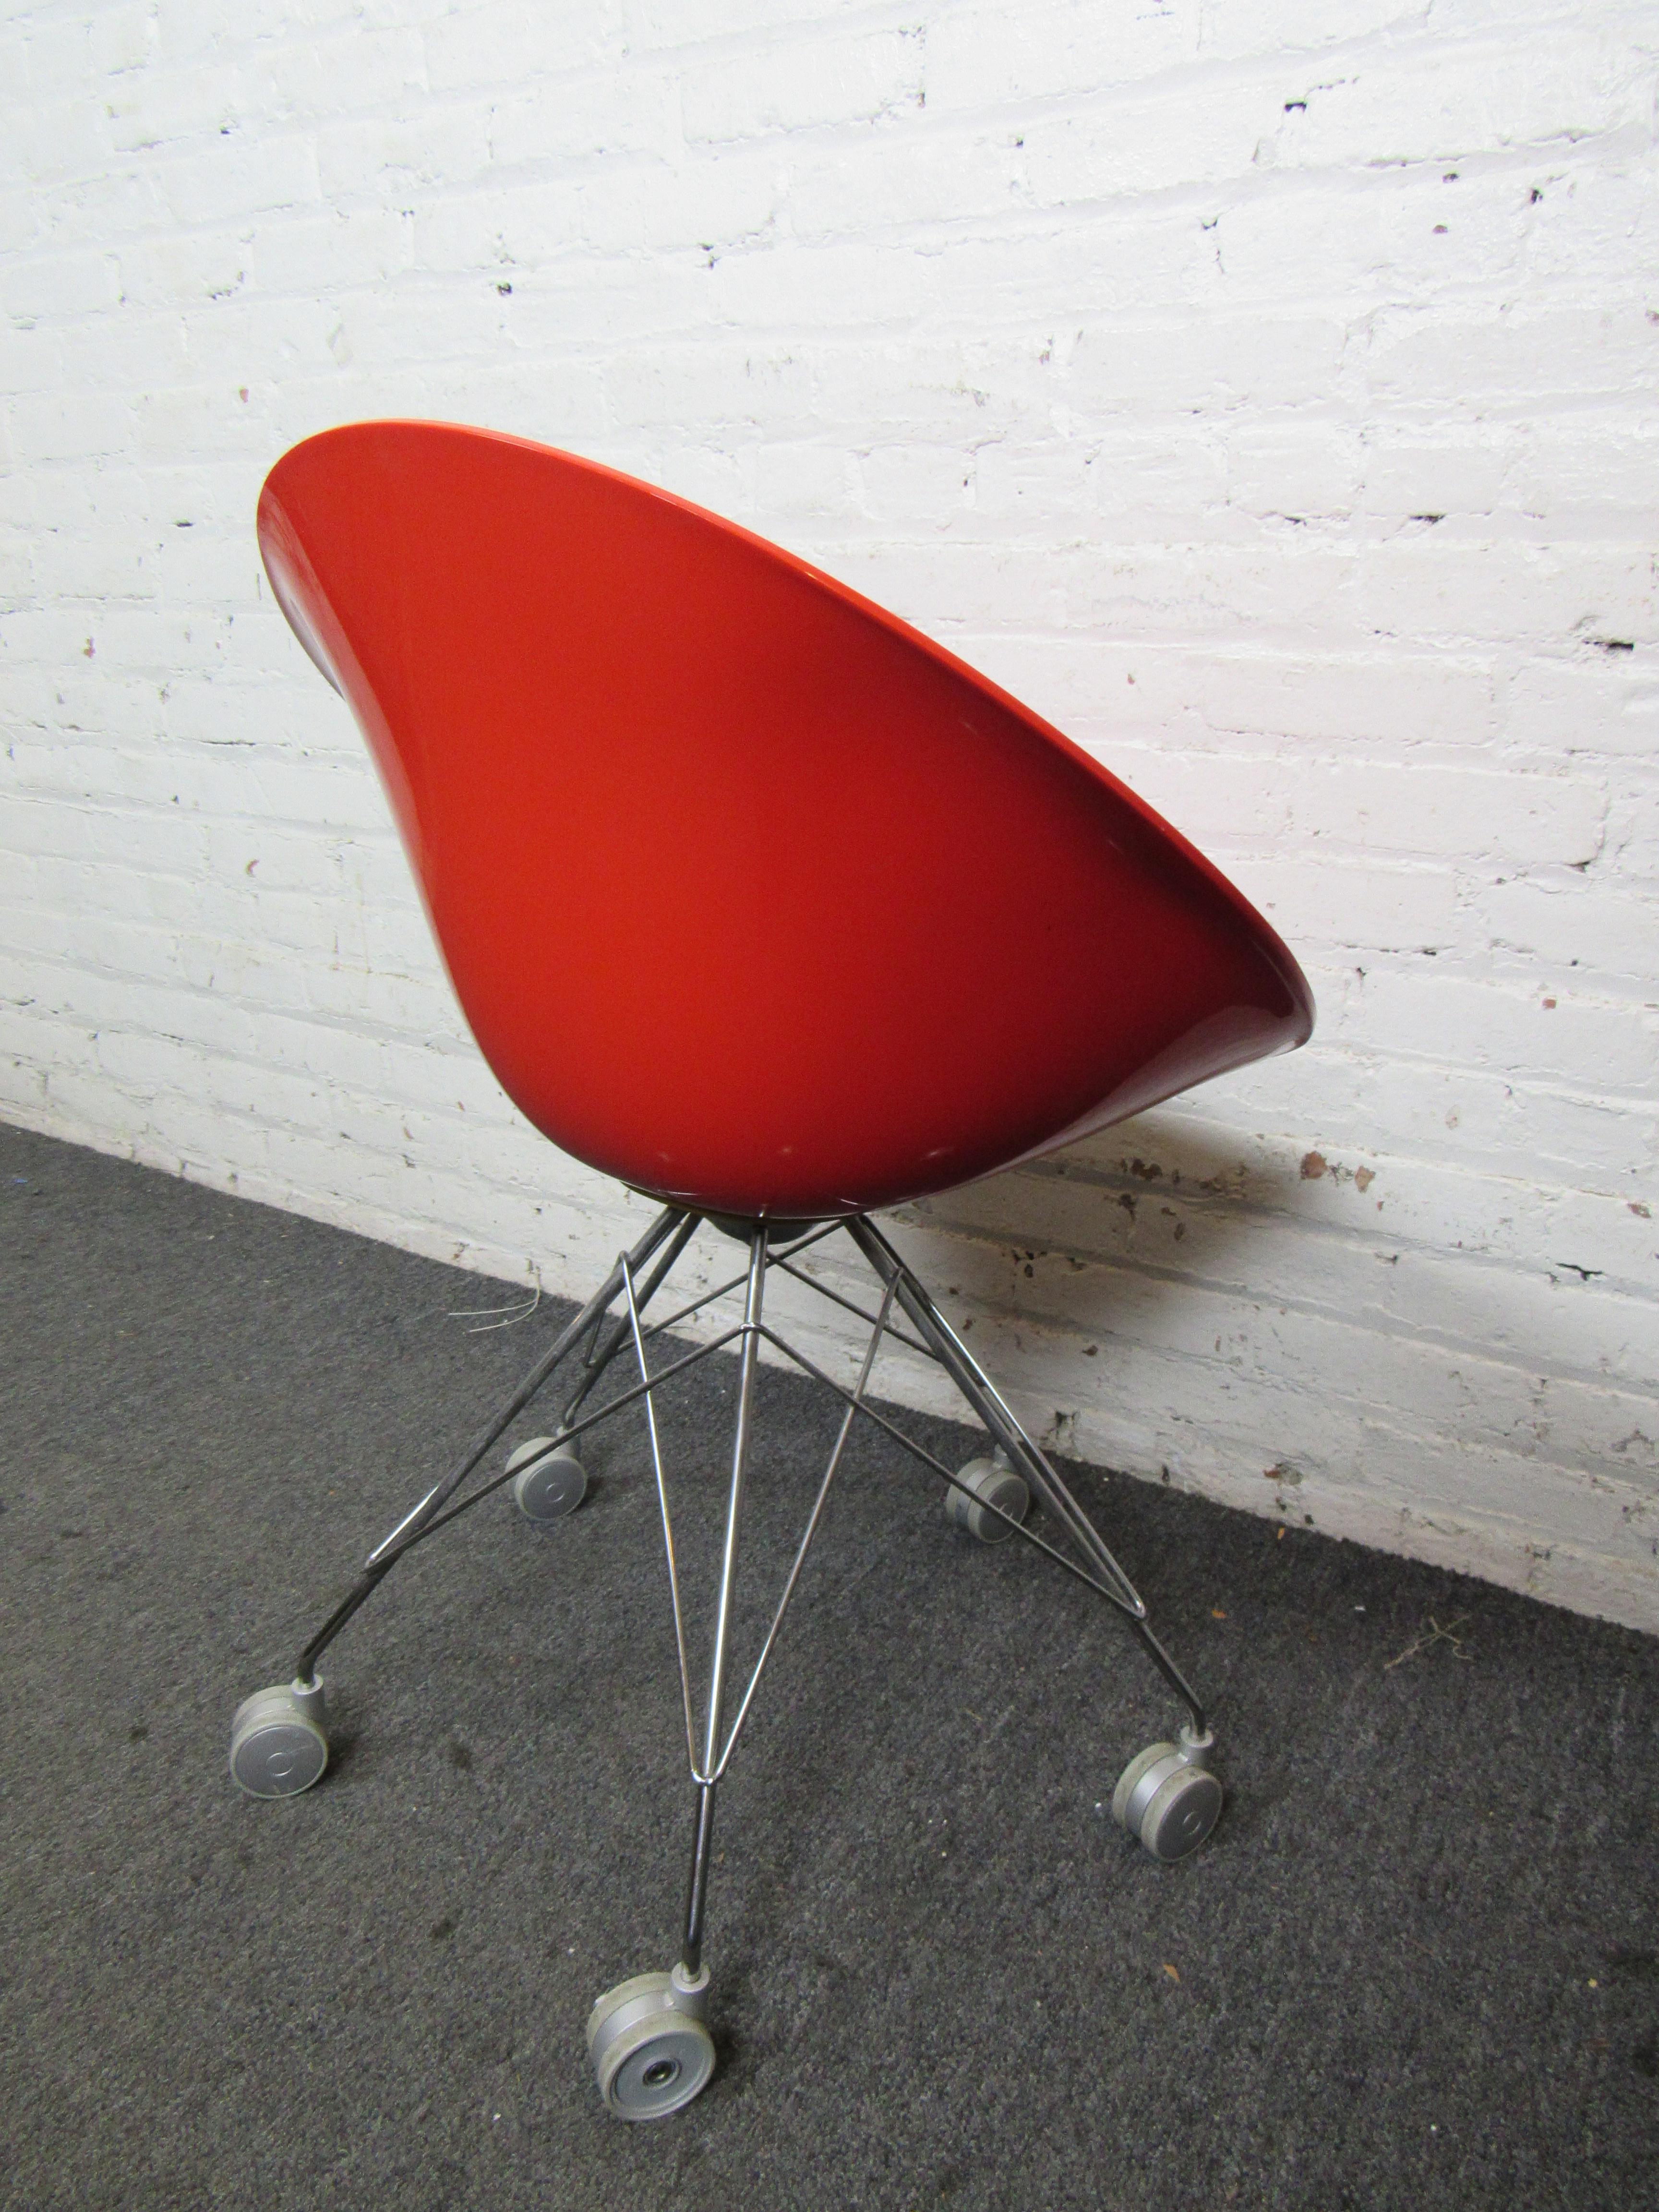 Italian EroS Desk Chair by Philippe Starck for Kartell